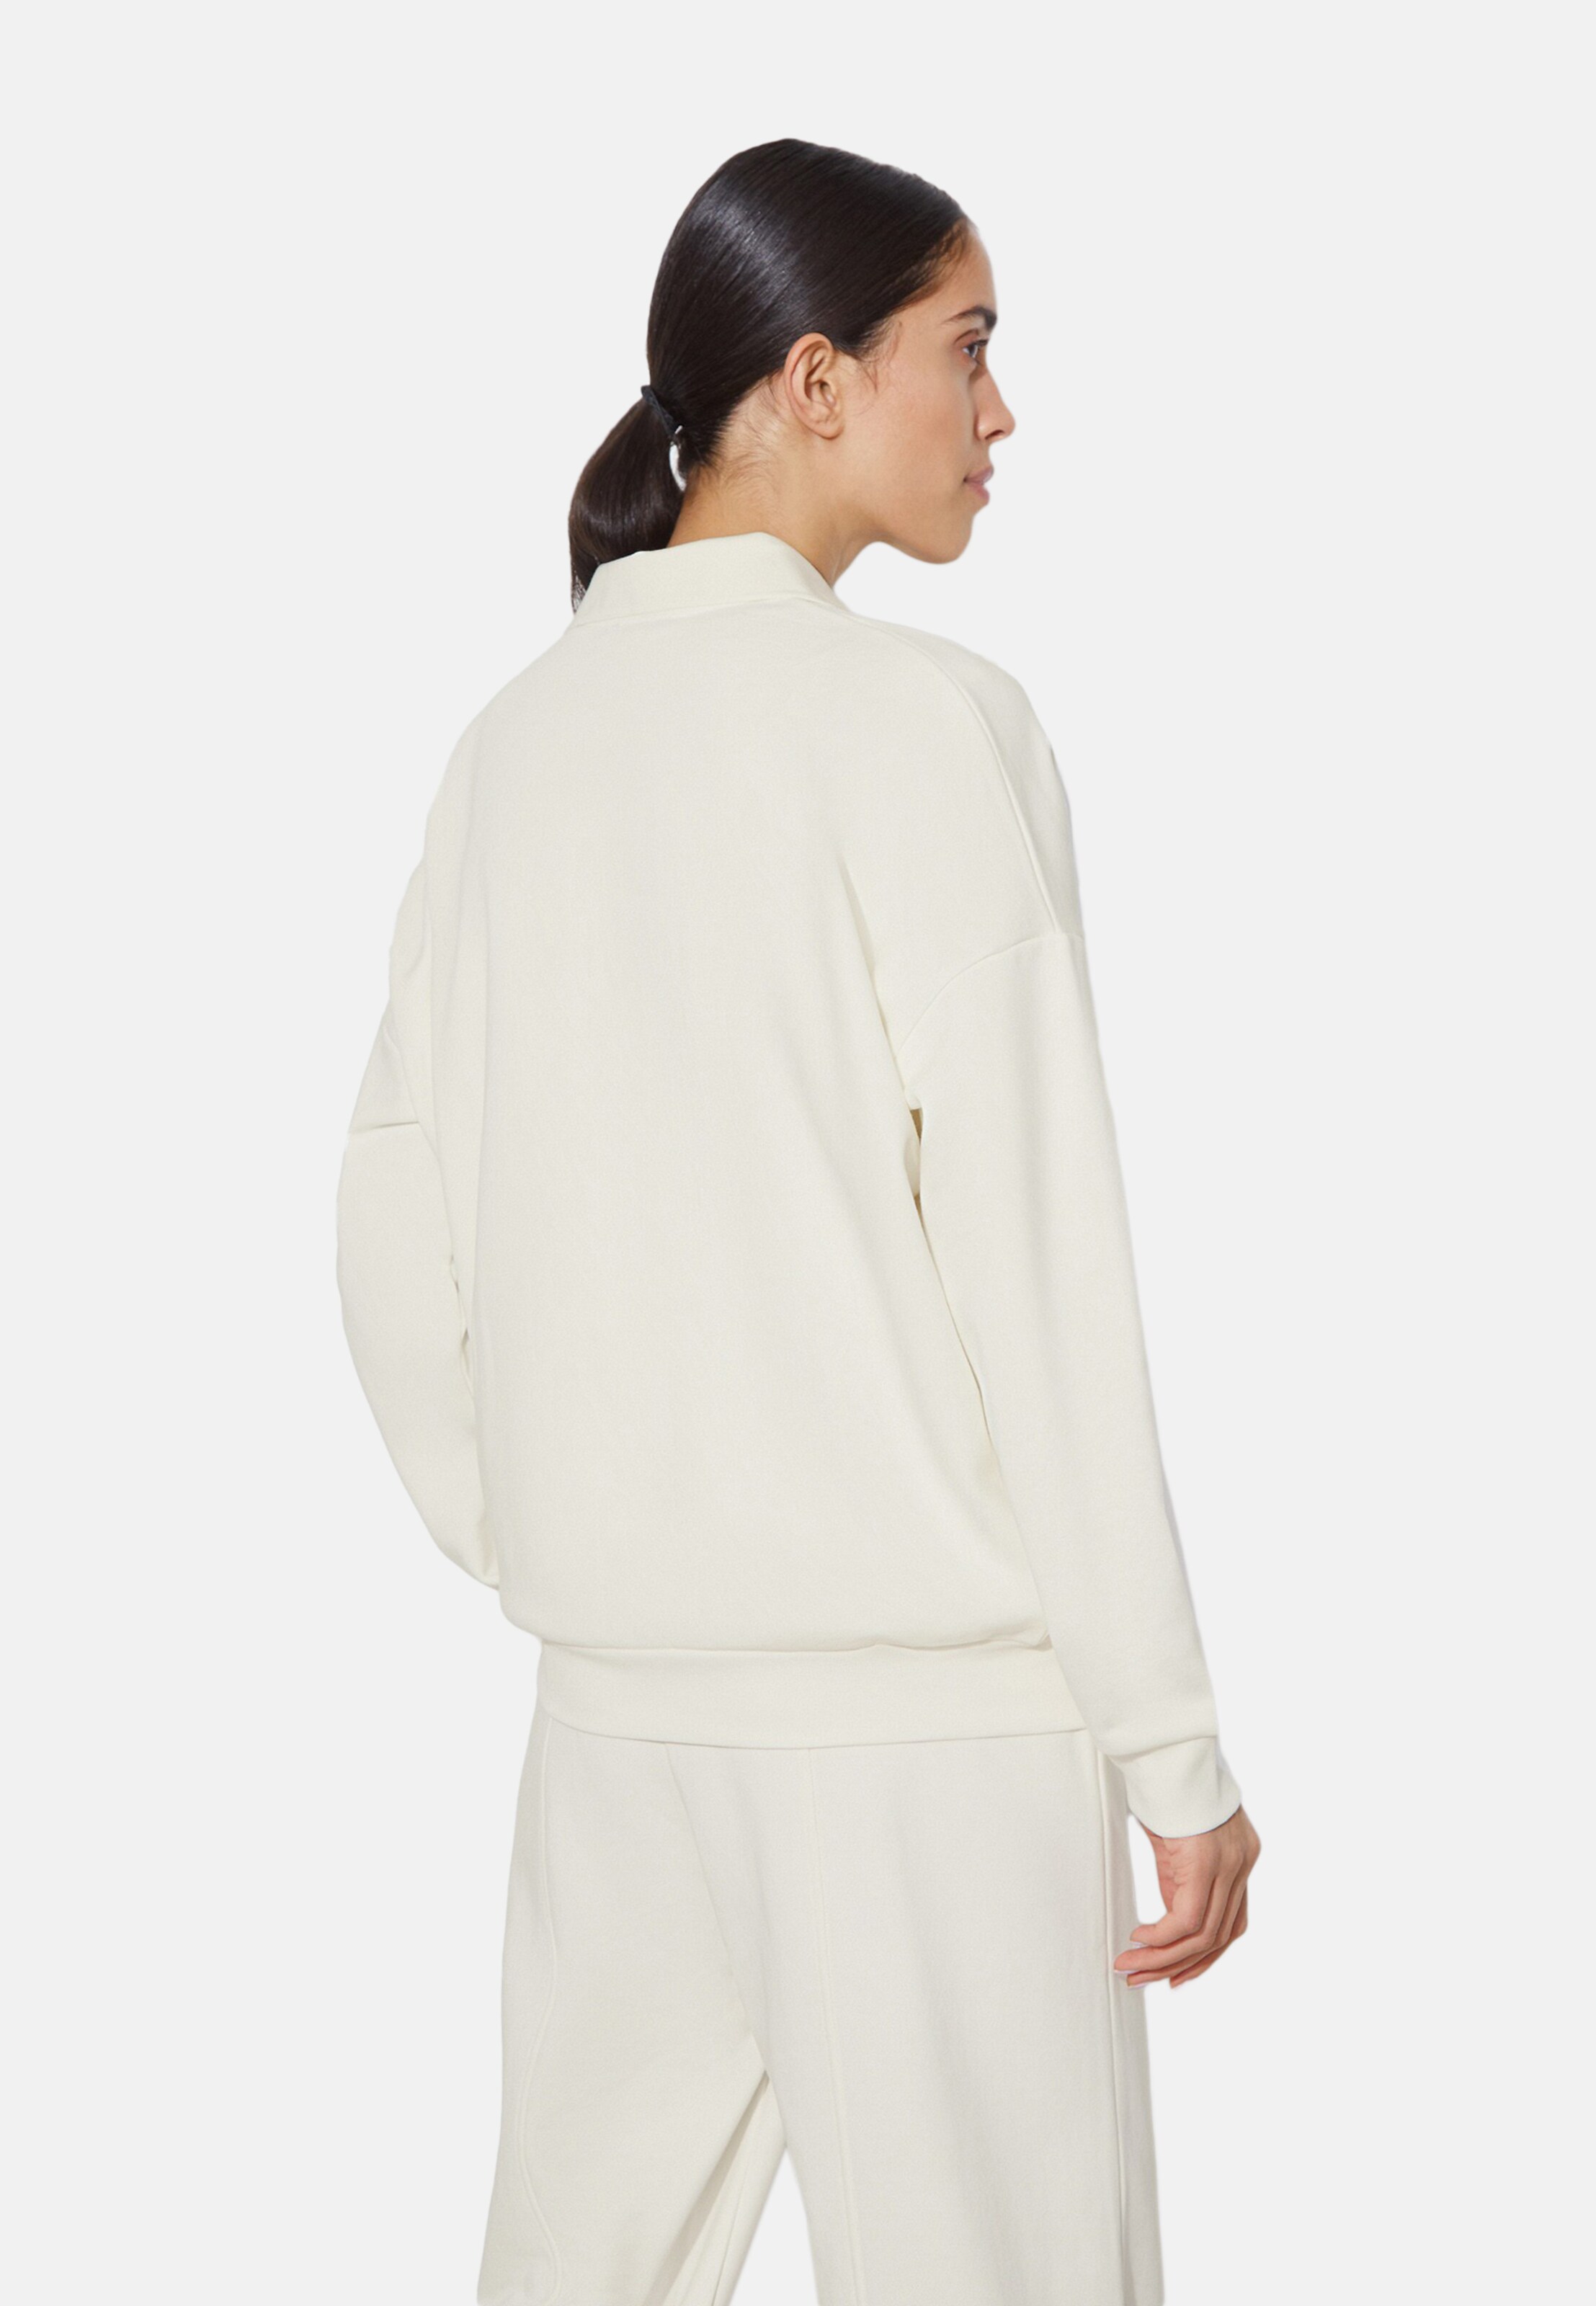 Frauen Sweat 12storeez Sweatshirt in Weiß - SR24866